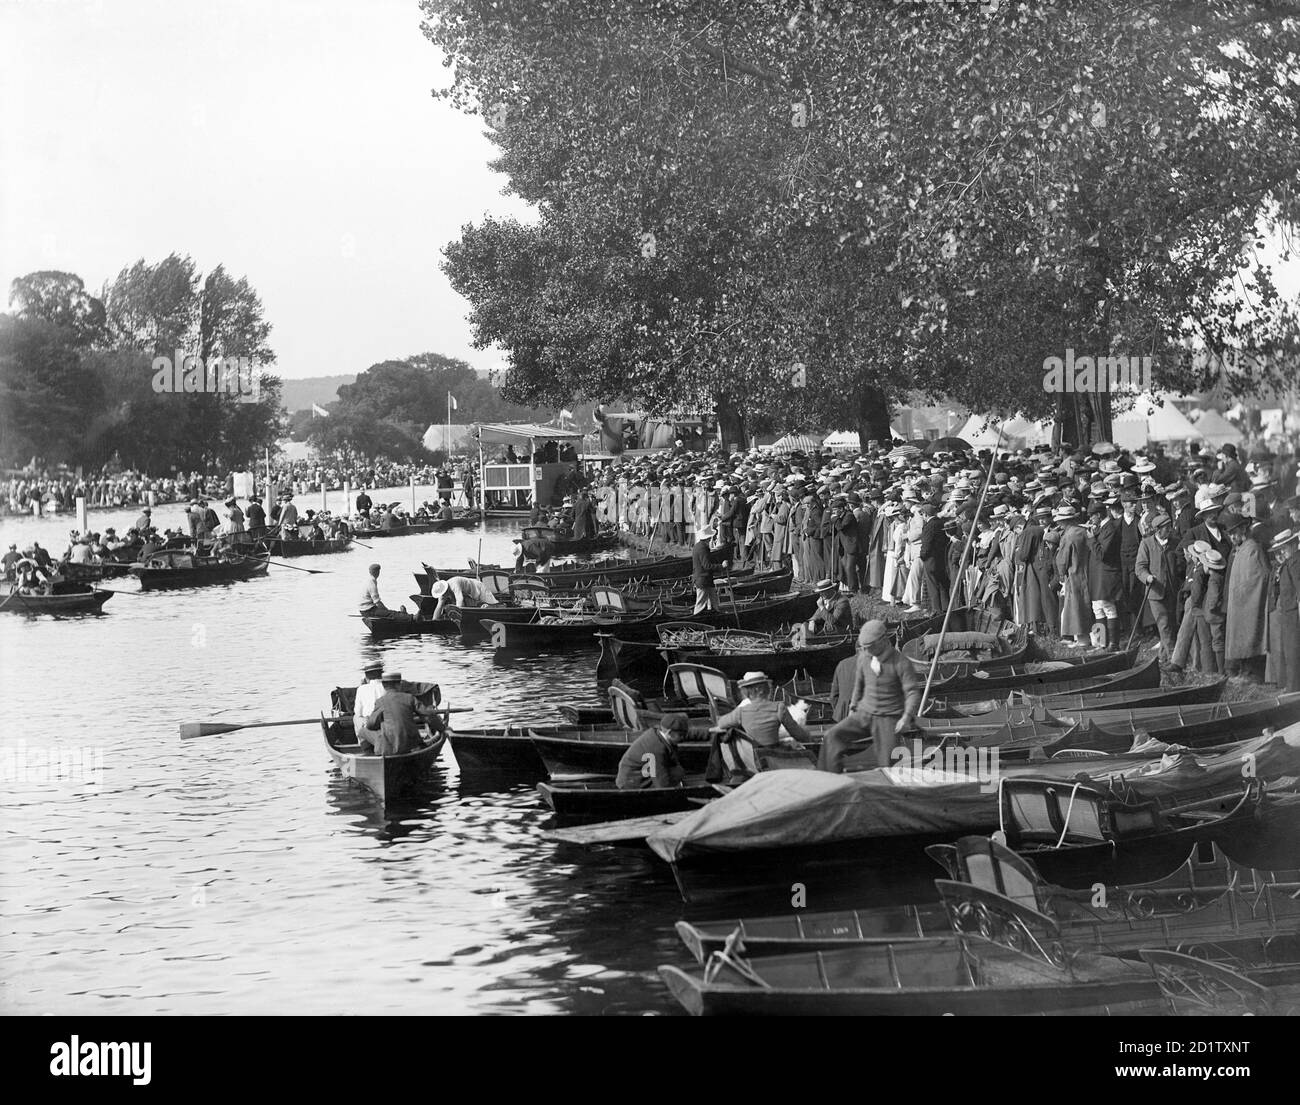 HENLEY-ON-THAMES, OXFORDSHIRE. Massen von Zuschauern am Ufer des Flusses und Boote, die in der Nähe während der Regatta, einem wichtigen sozialen und wettbewerbsorientierten Ereignis, das jedes Jahr auf der Themse seit 1839 stattfindet, festgemacht wurden. Fotografiert von Hentry Taunt im Jahr 1902. Stockfoto